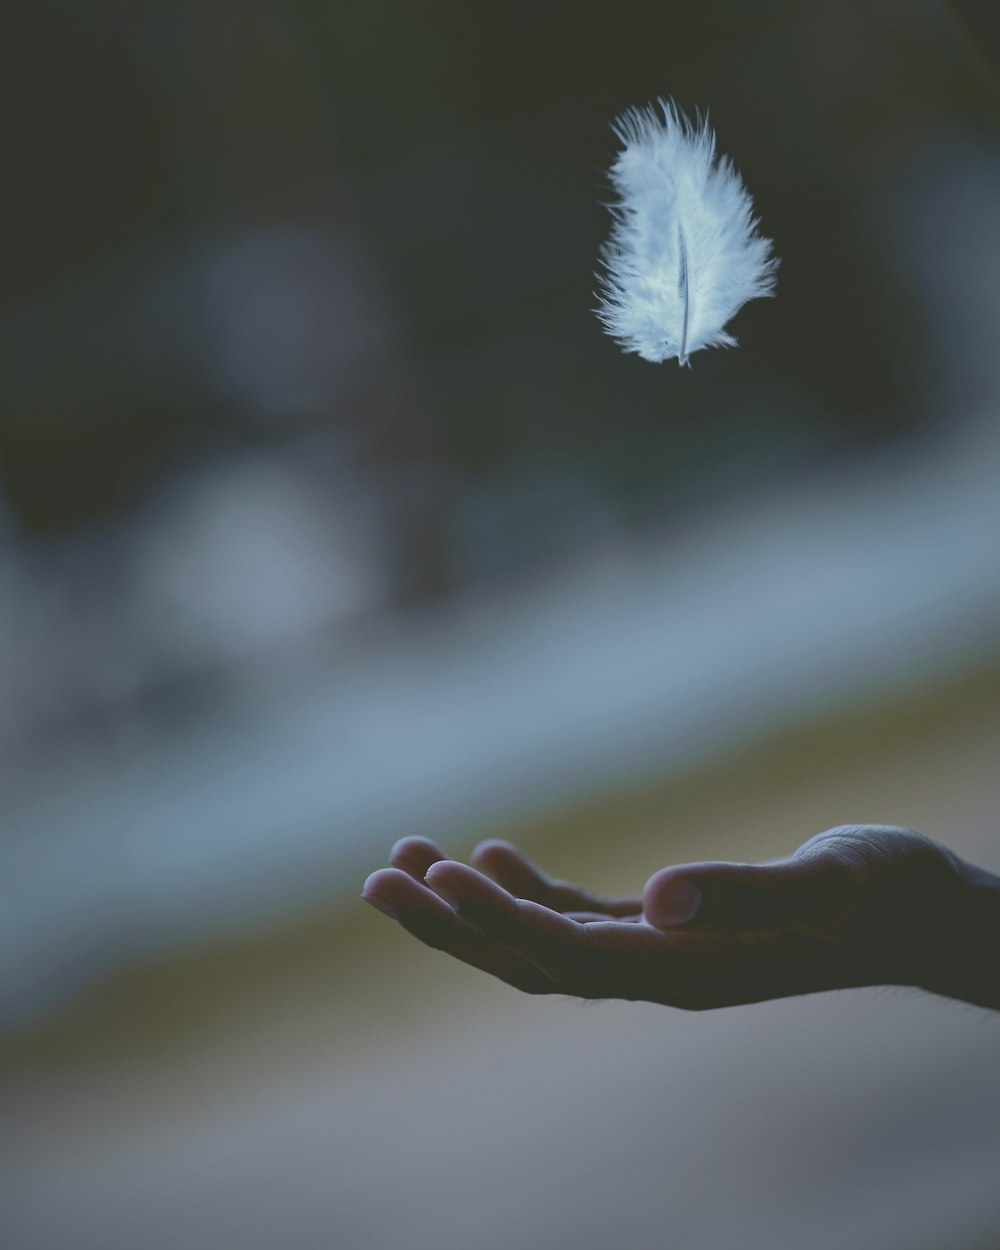 fotografía de enfoque superficial de plumas blancas cayendo en la mano de una persona